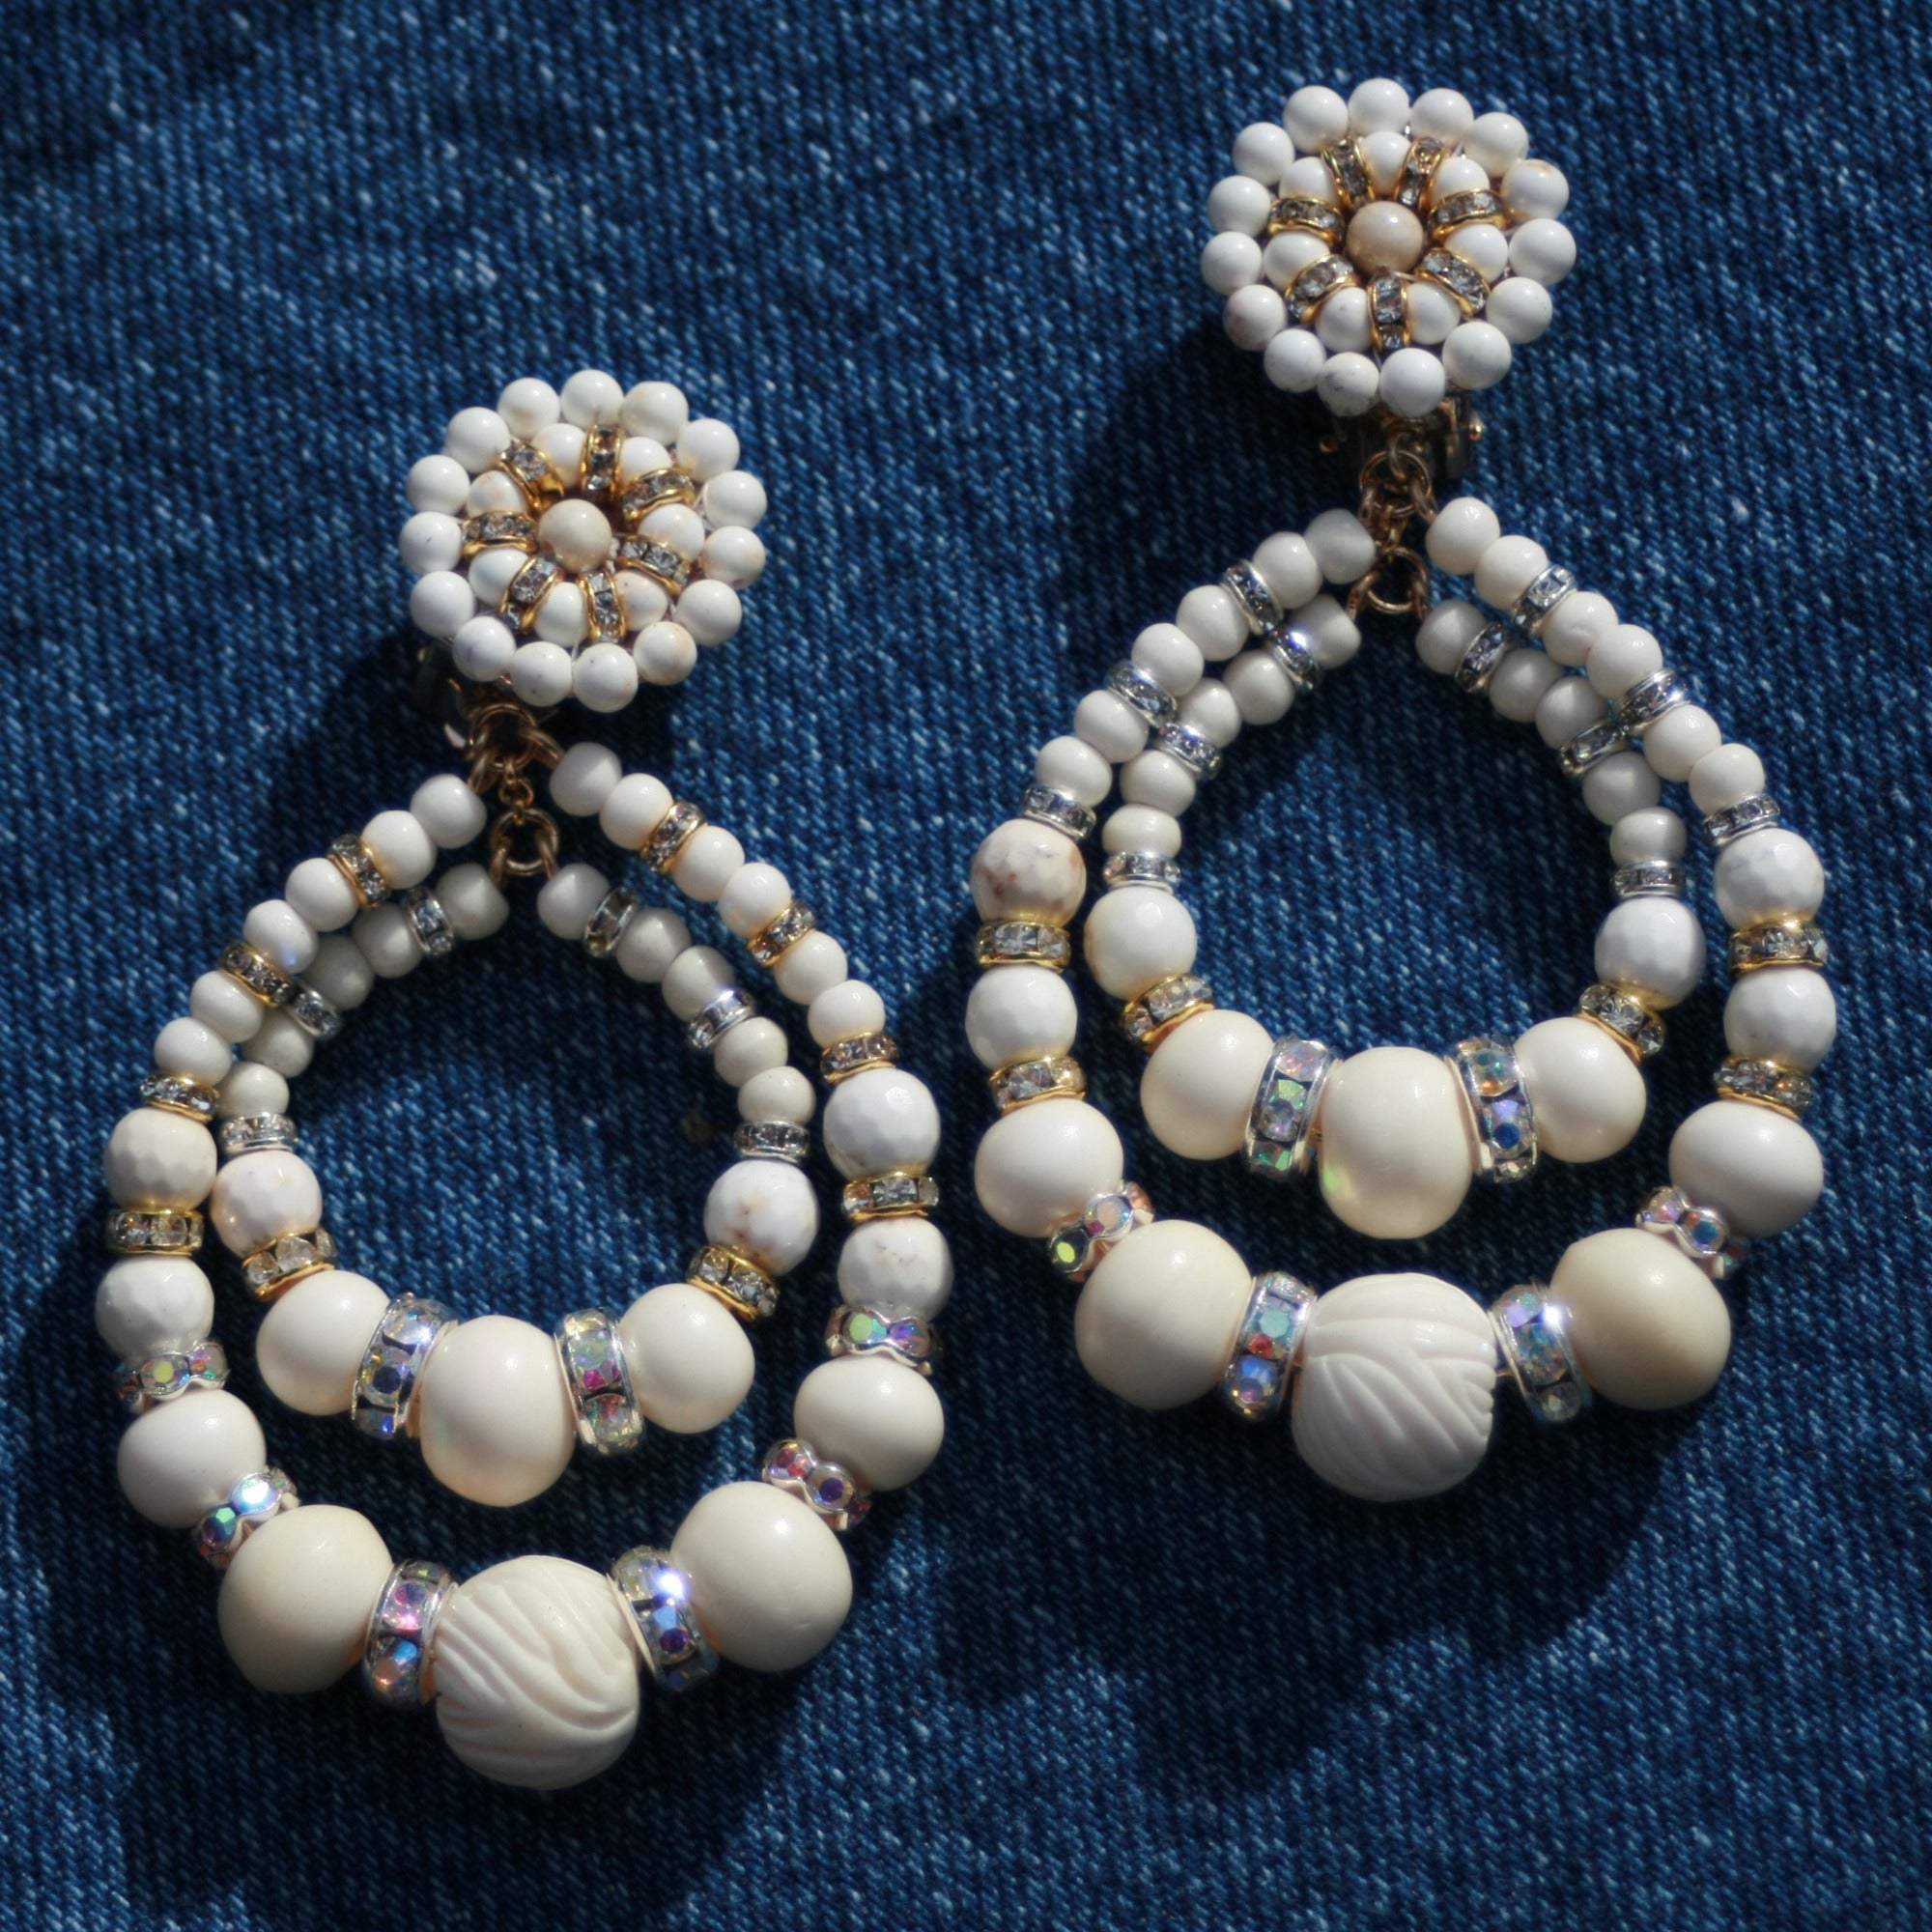 statement earrings in white shell resin earrings clip on earrings